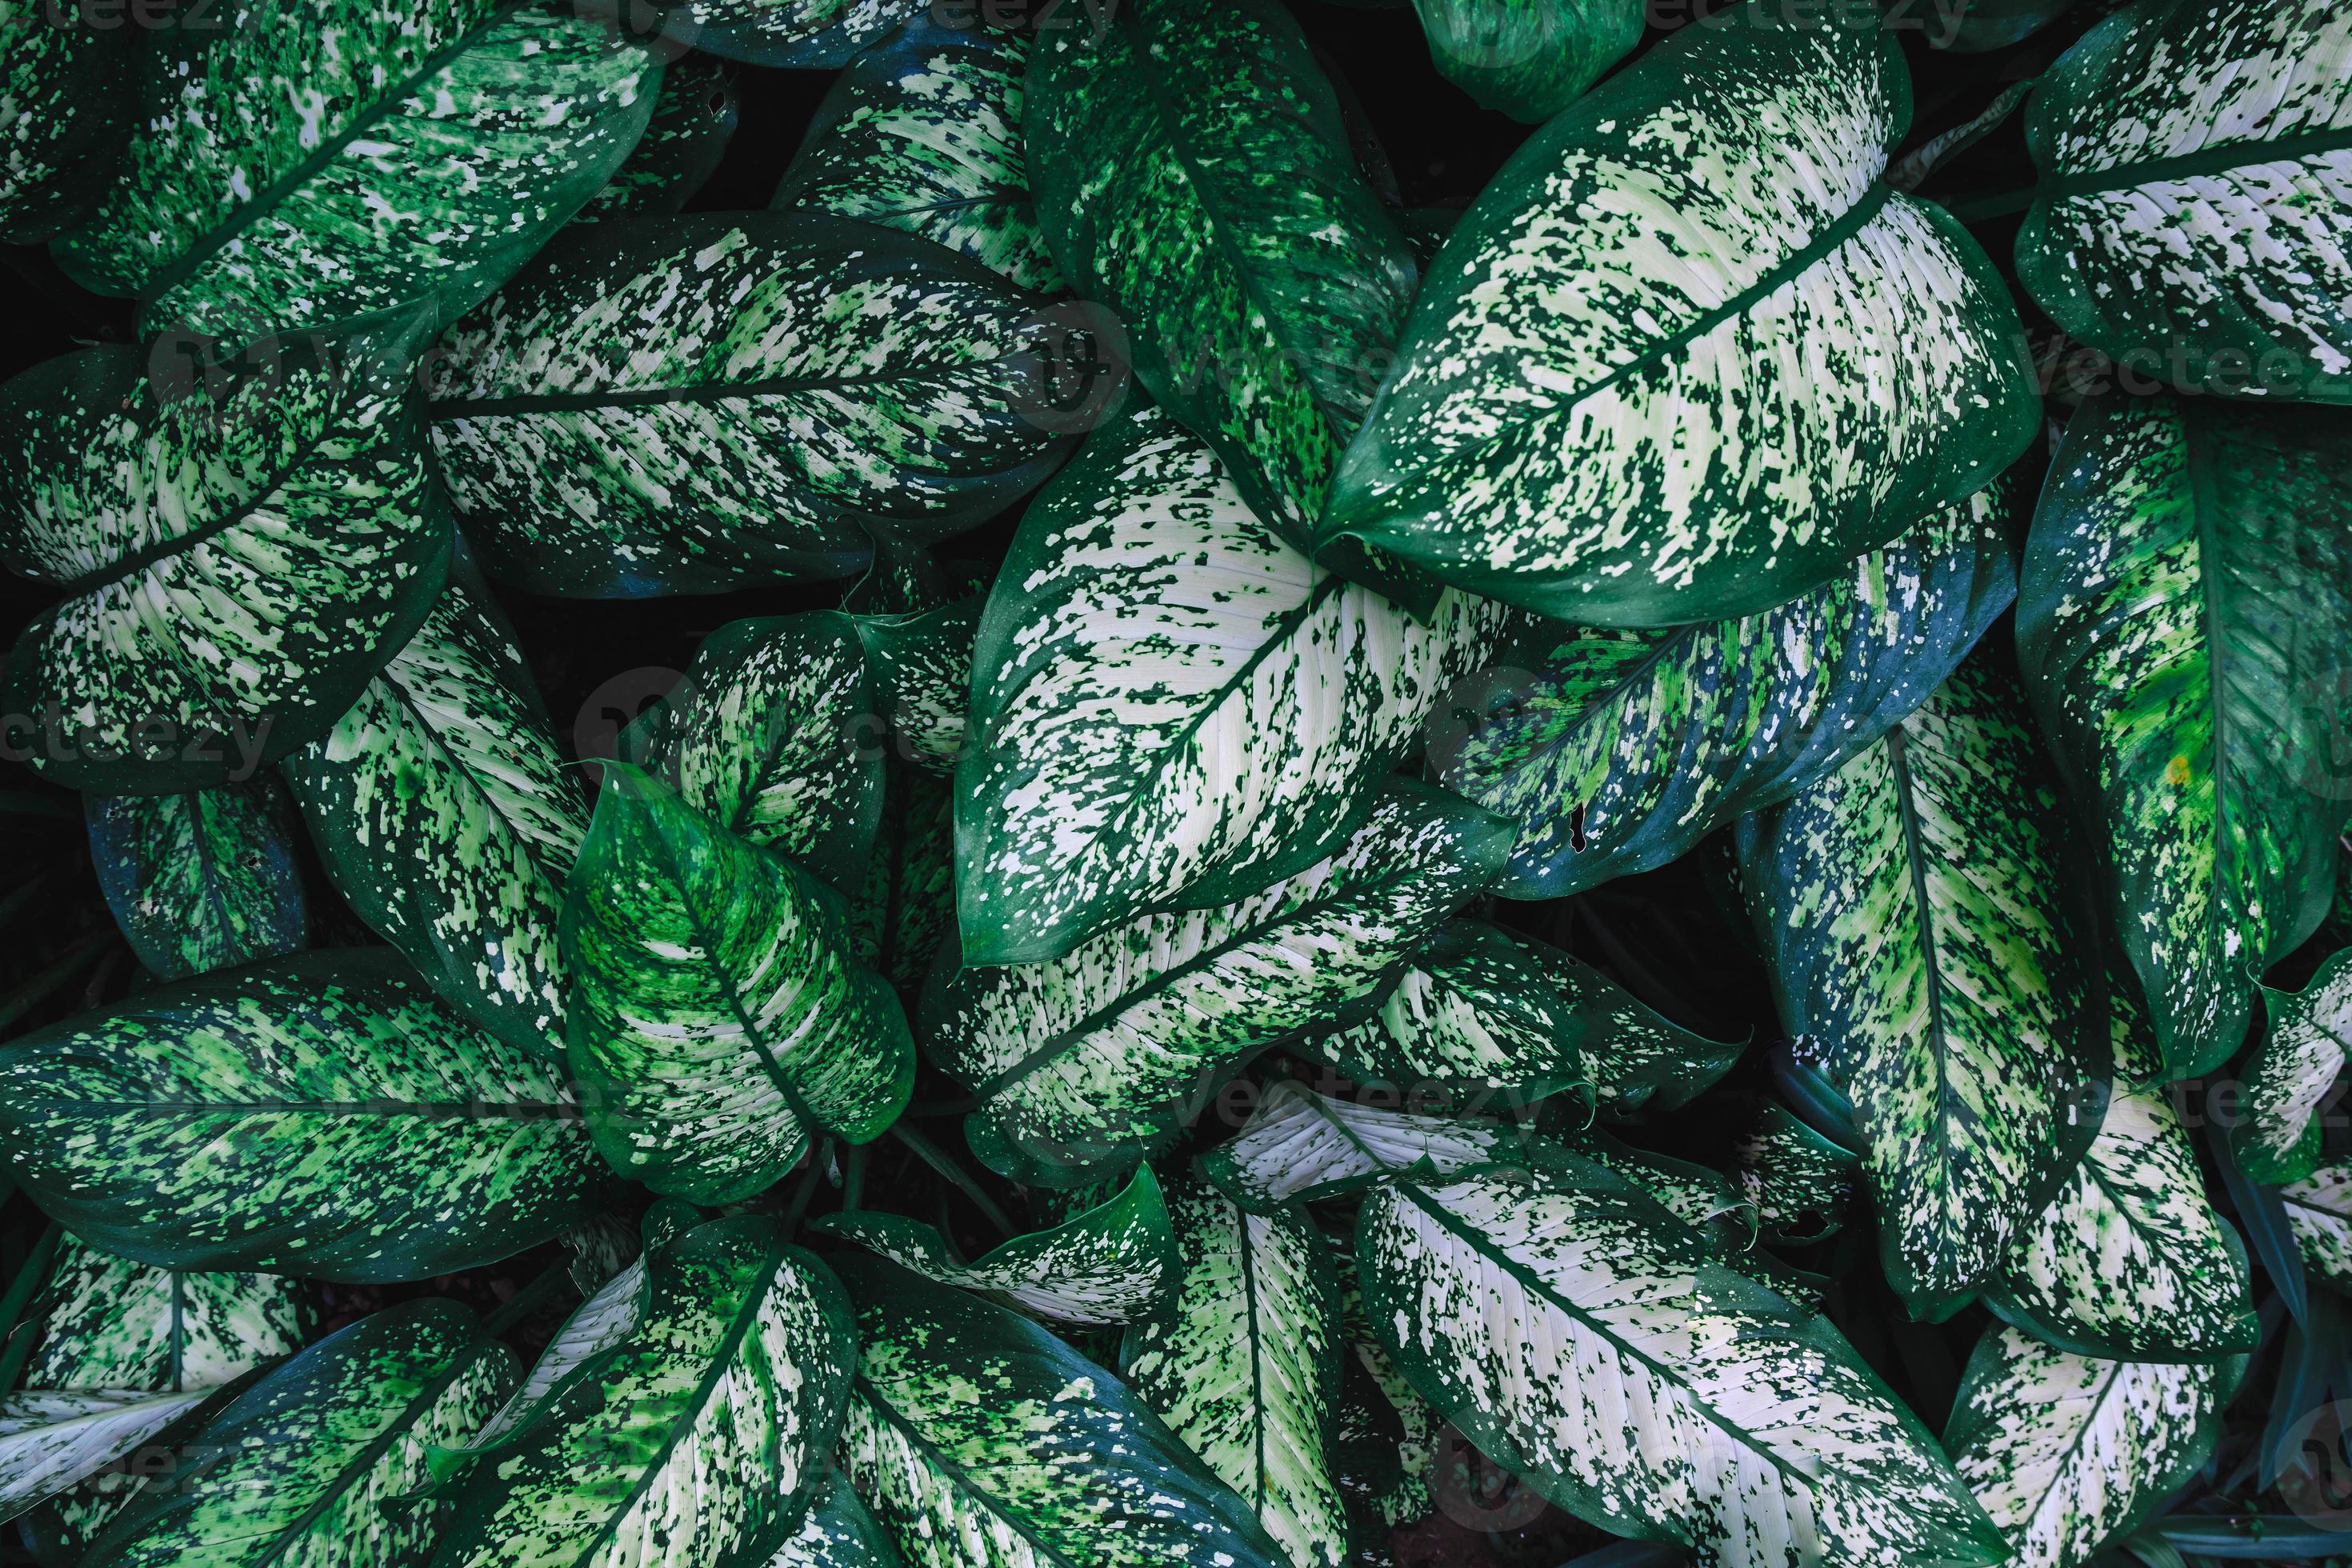 gröna blad mönster bakgrund, naturlig bakgrund foto